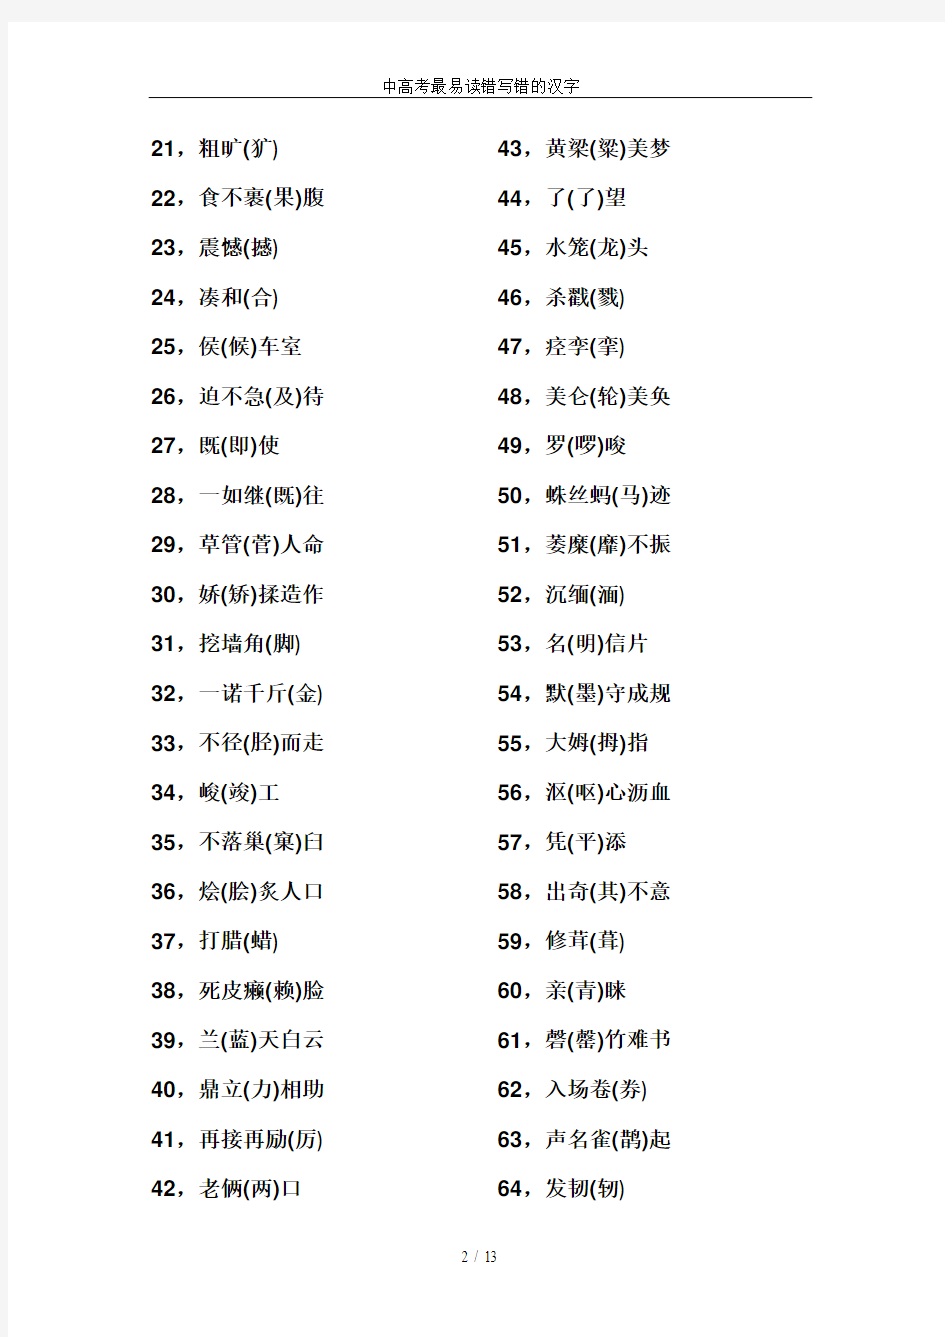 中高考最易读错写错的汉字